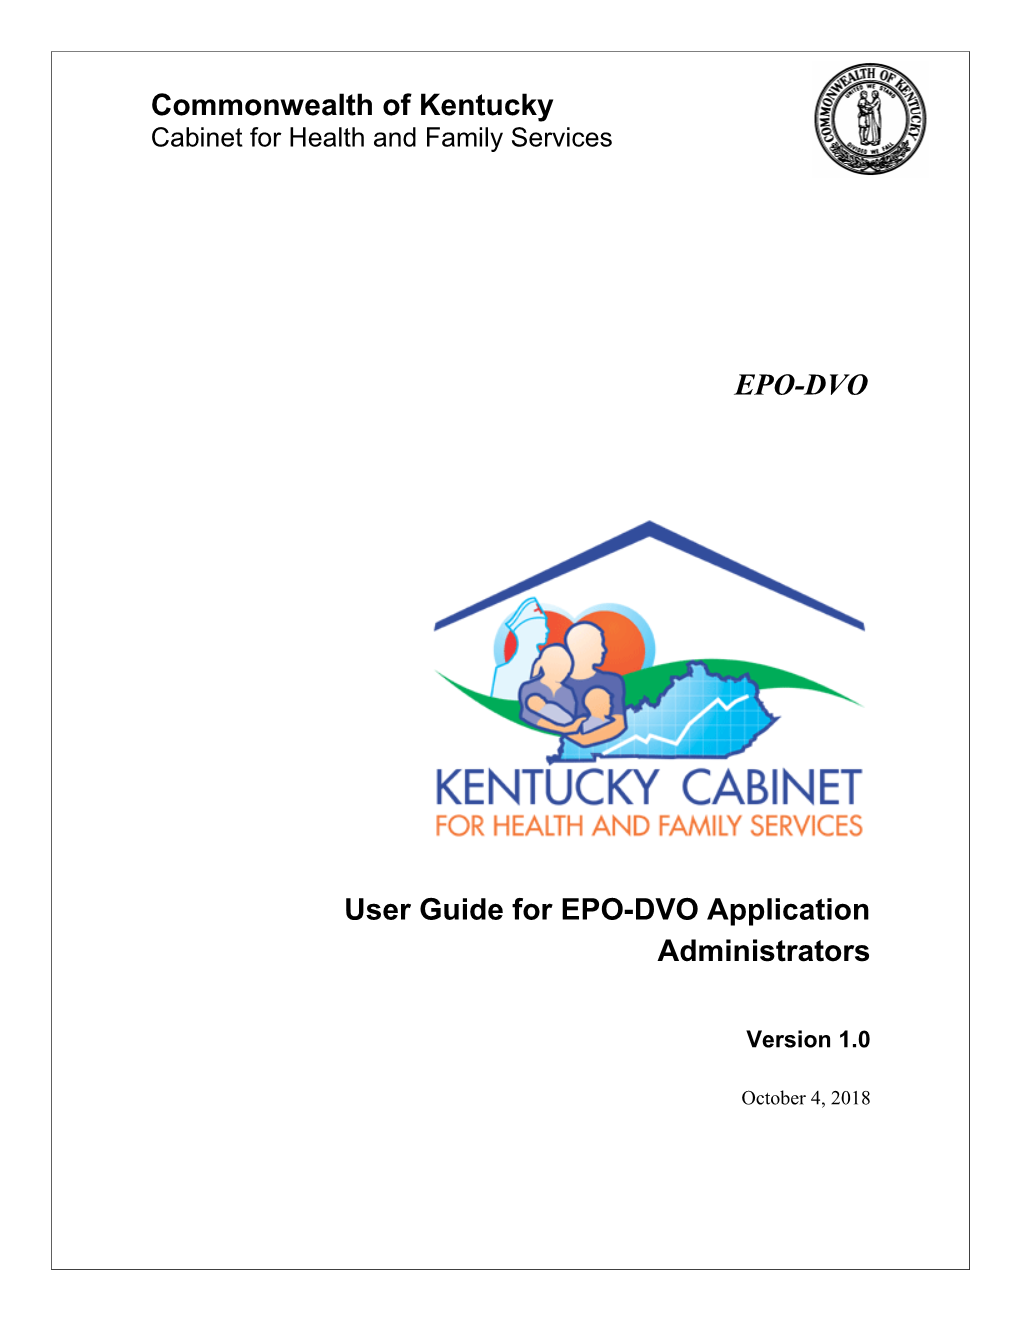 User Guide for EPO-DVO Application Administrators